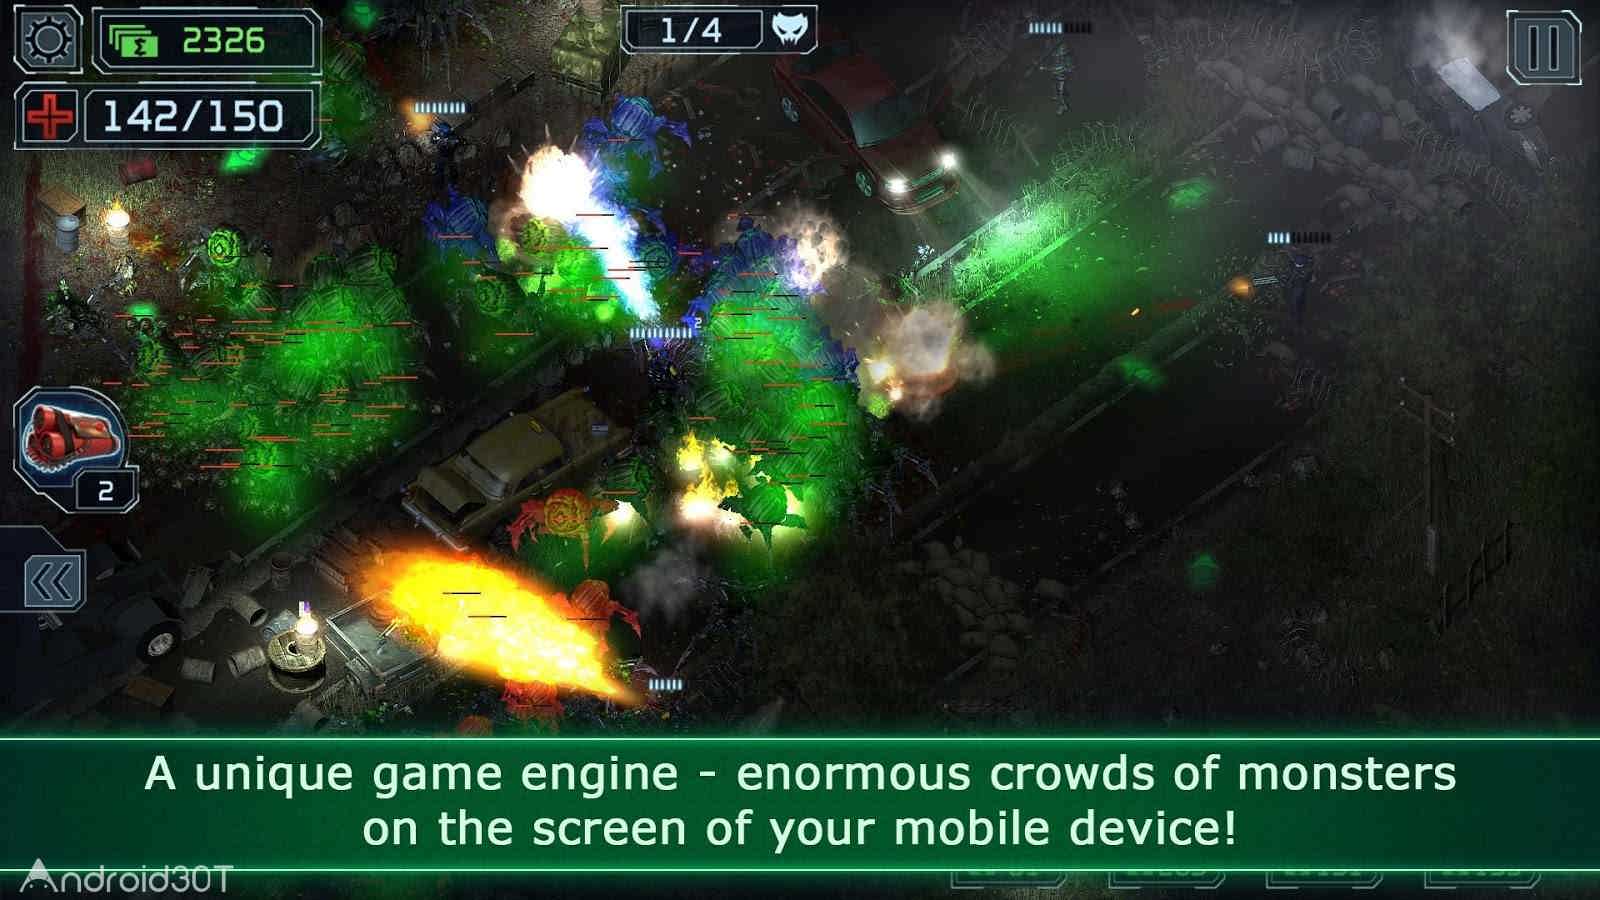 دانلود Alien Shooter TD 1.6.2 – بازی استراتژیک تیرانداز بیگانه اندروید